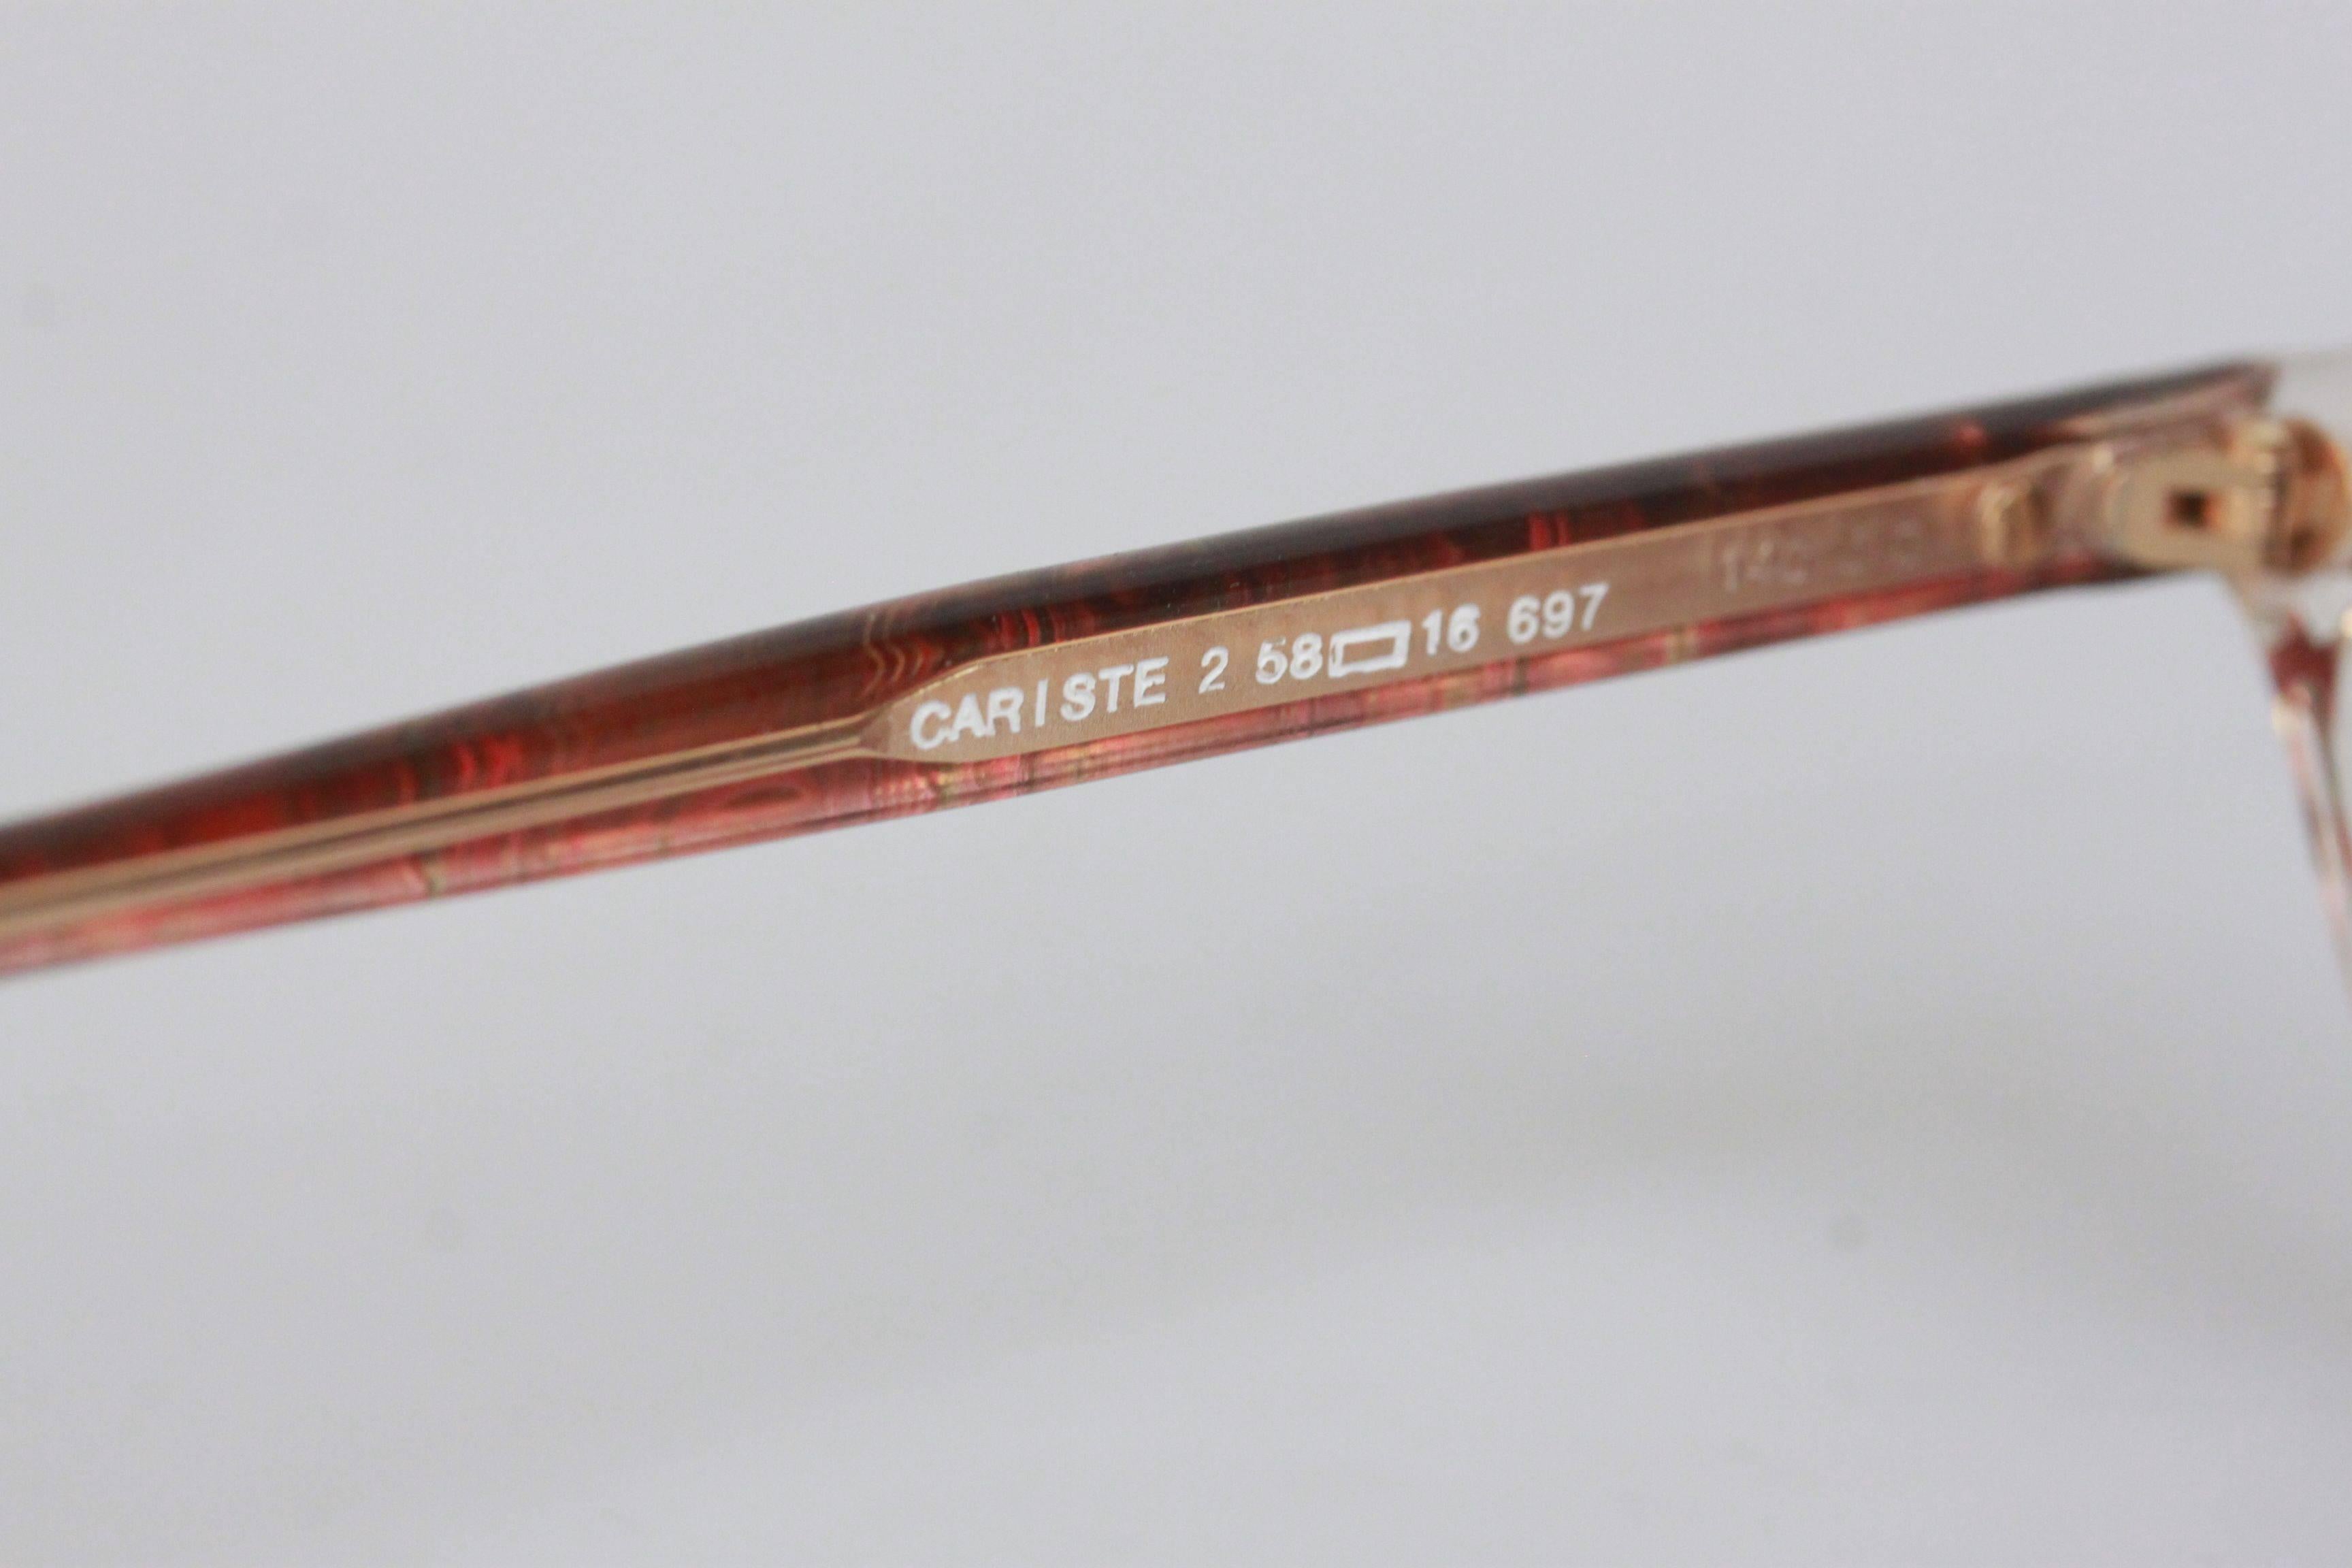 YVES SAINT LAURENT Vintage MINT Red SUNGLASSES CARISTE 2 697 58-16 mm 1